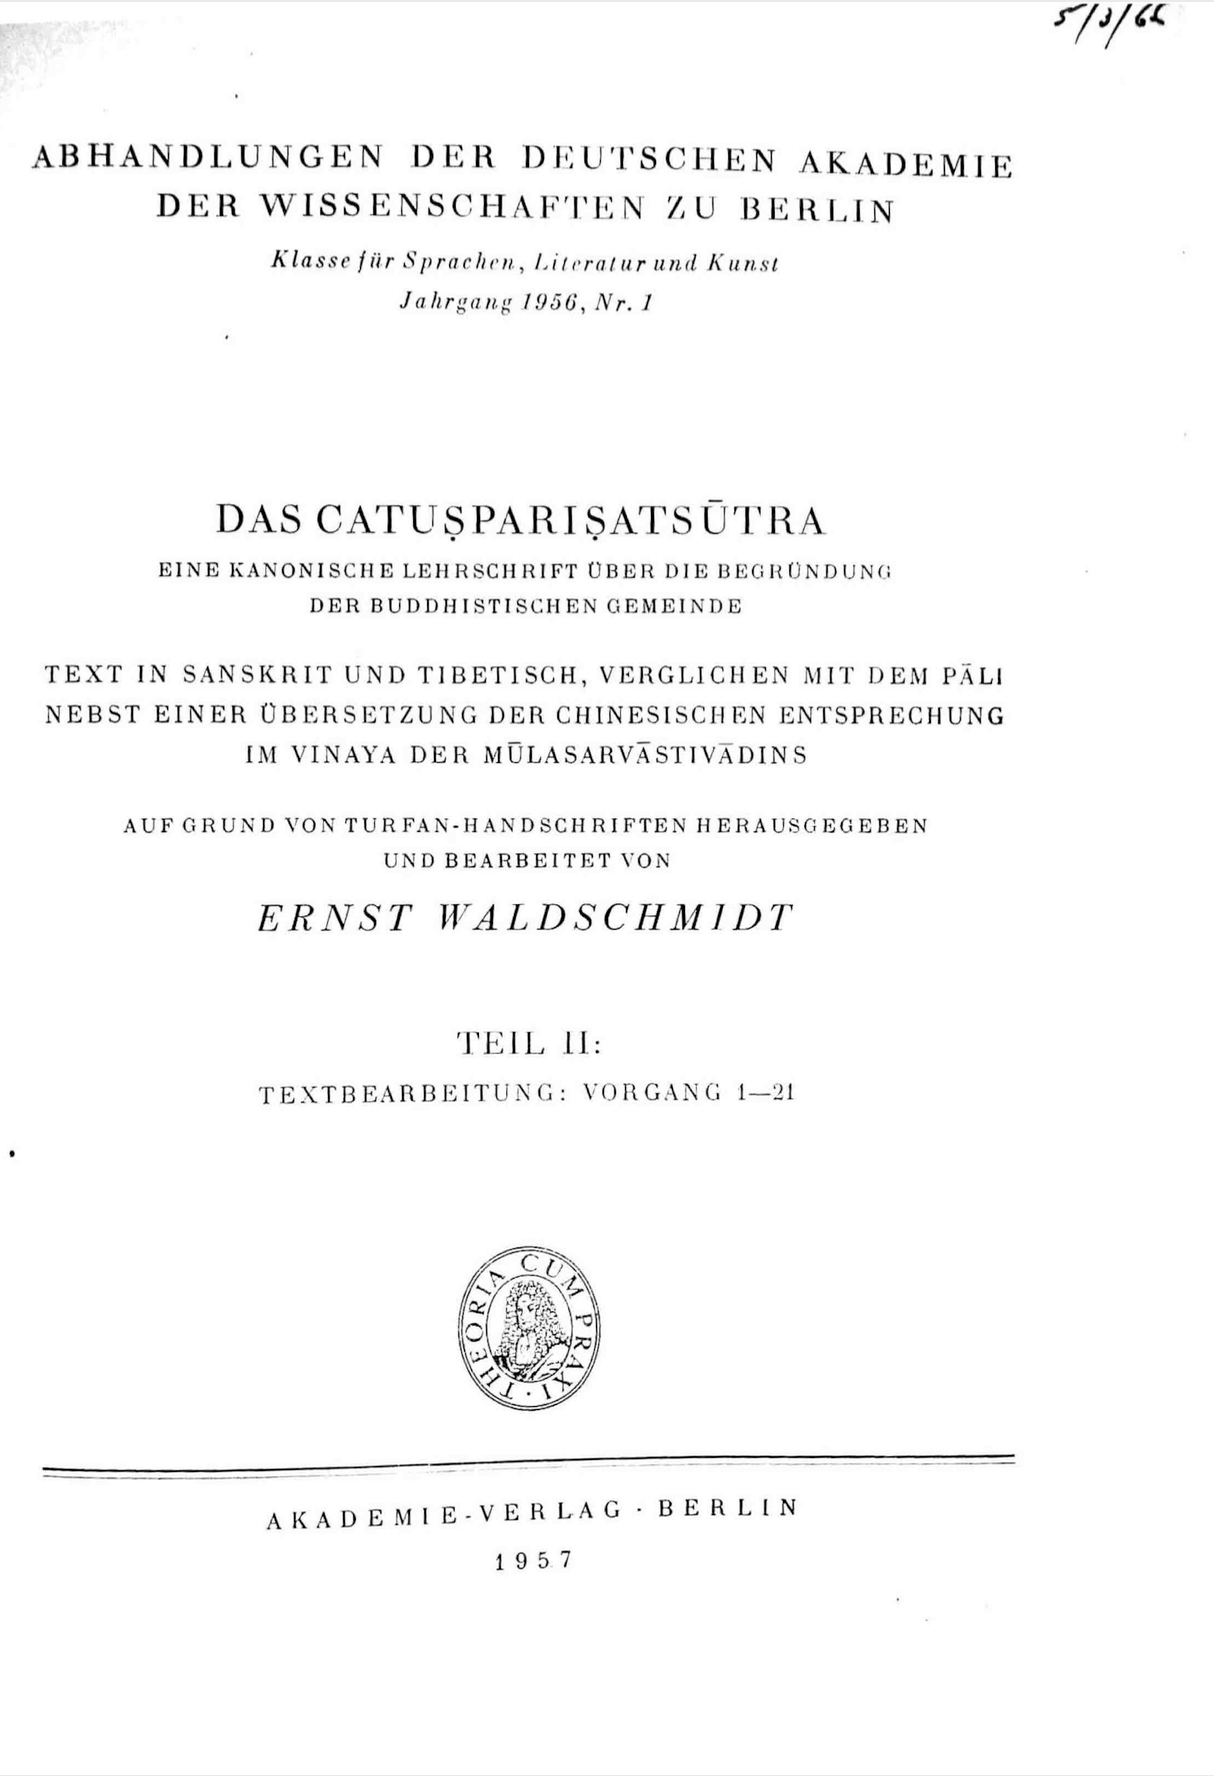 Das Catusparisatsutra Vol. 2-front.jpg